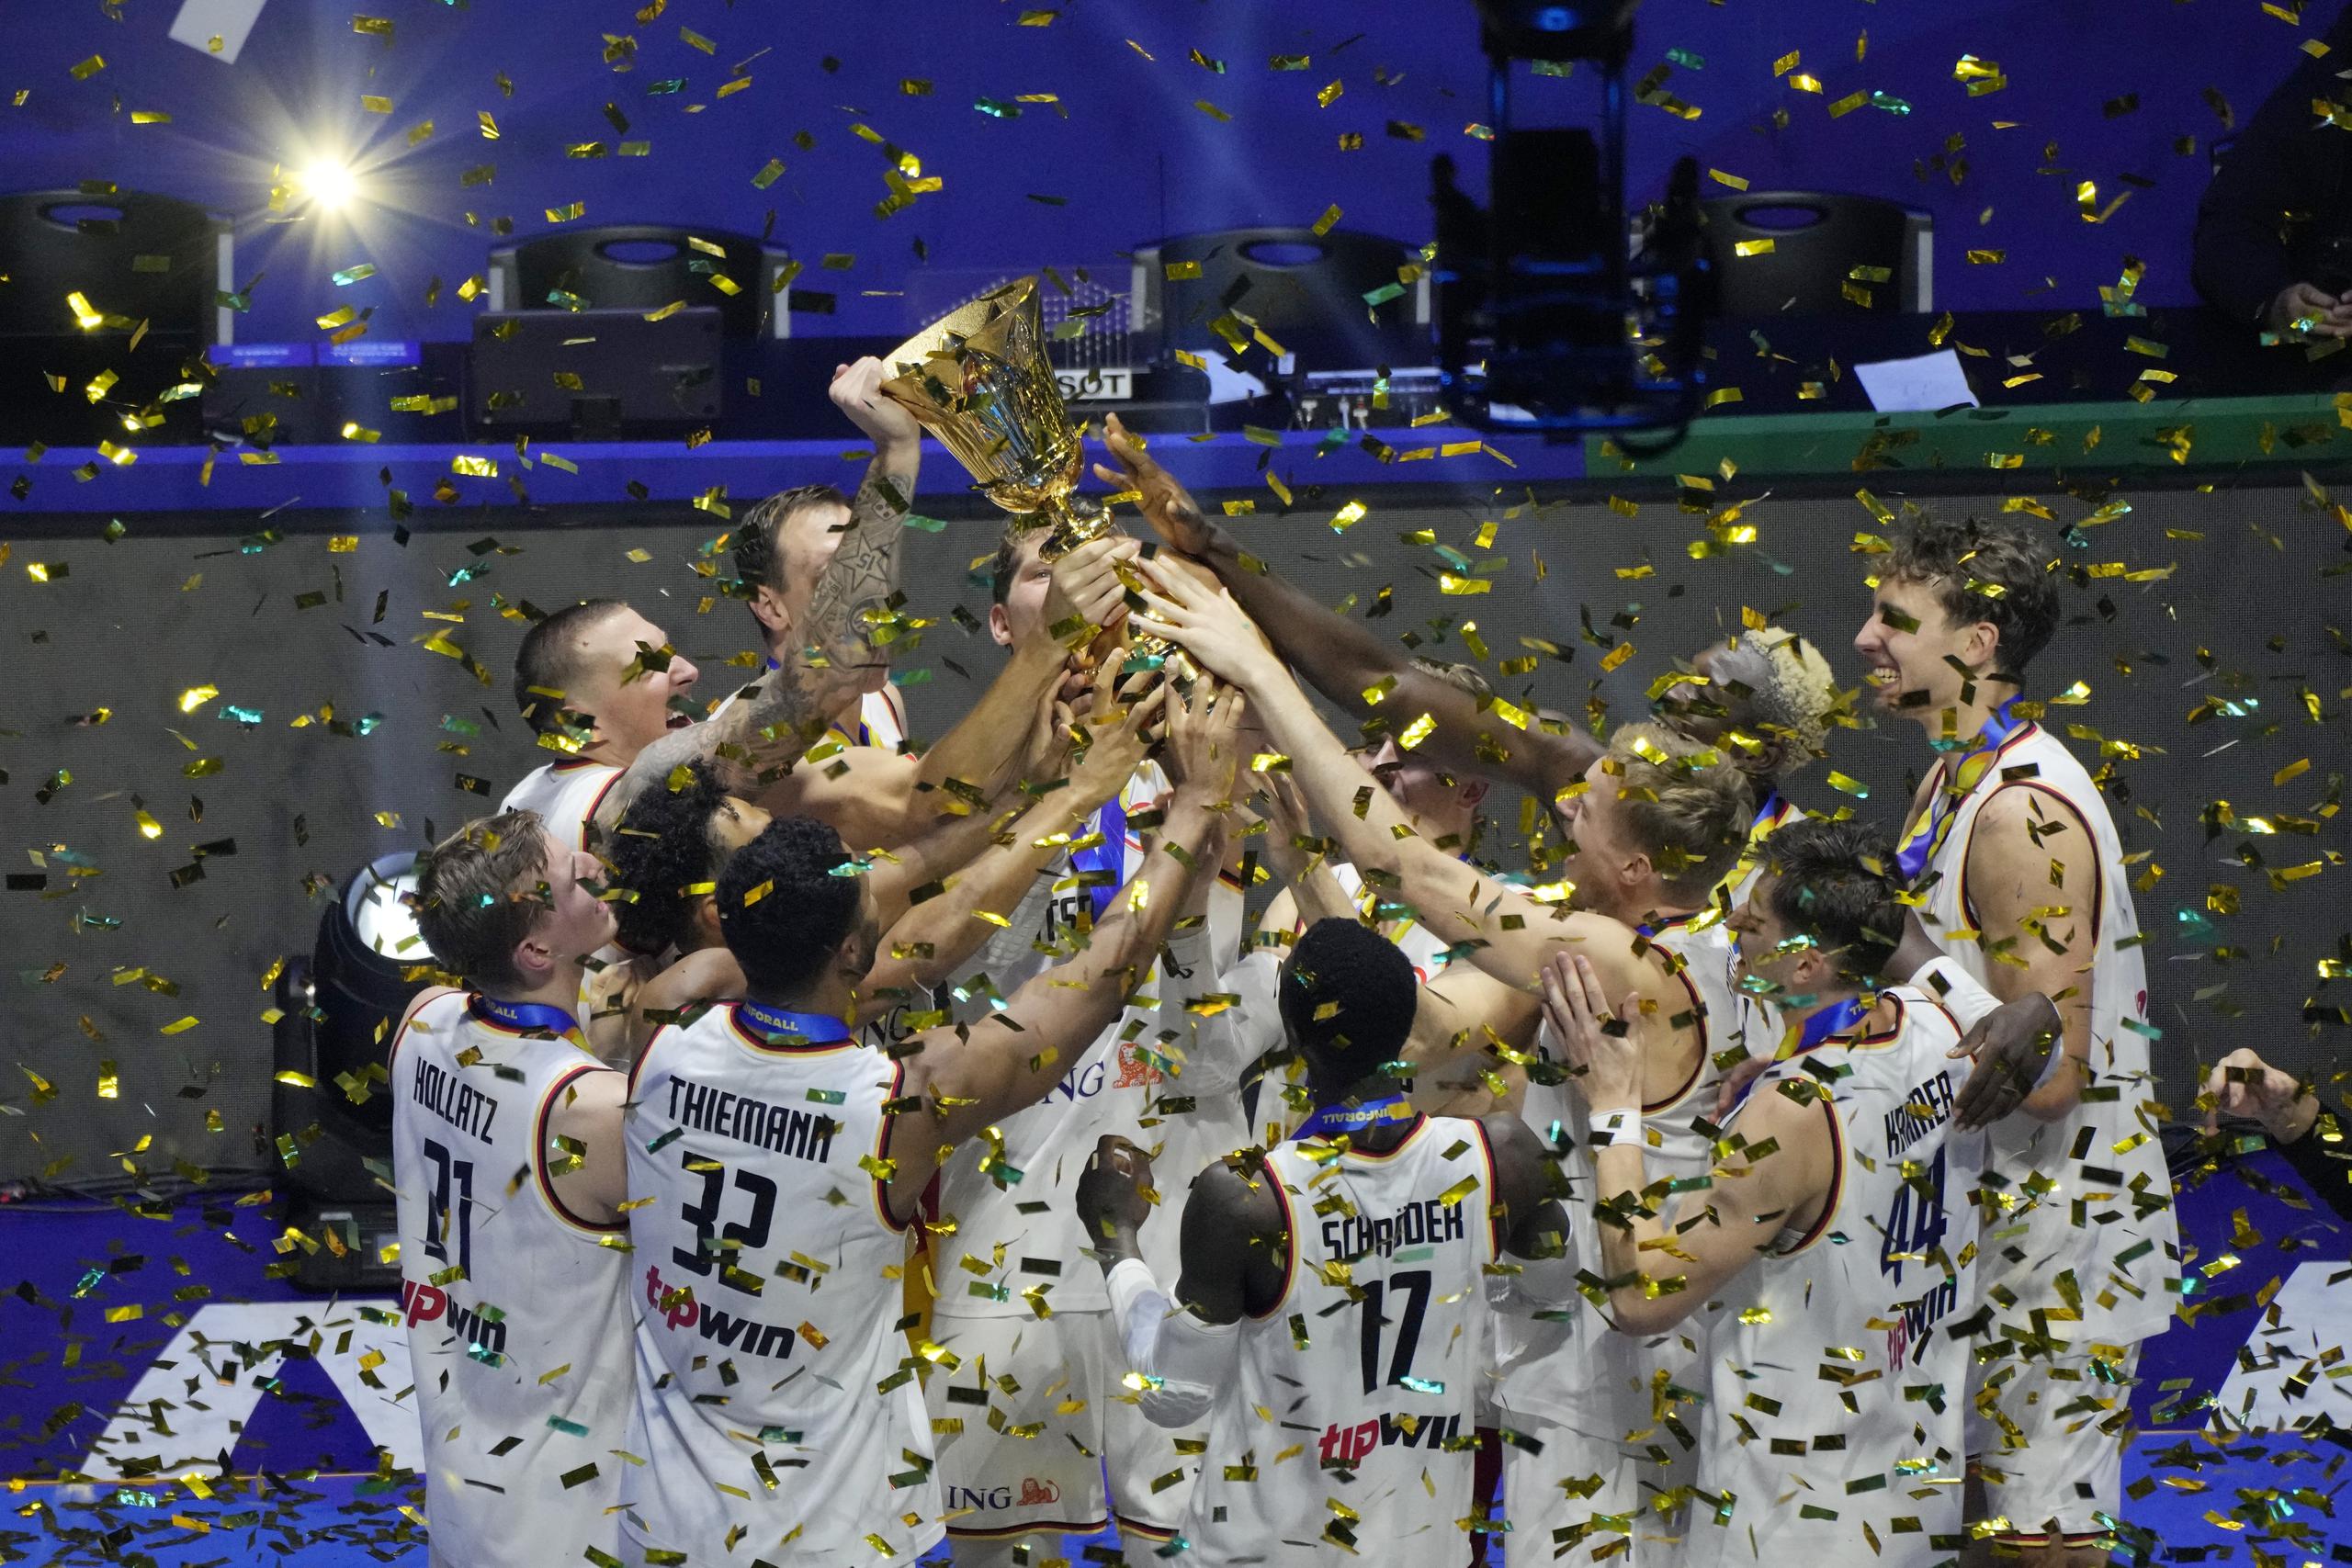 Alemania levanta la copa mundial de baloncesto masculino luego de ganar el título con una victoria ante Serbia en el partido final jugado este domingo en Manila, Filipinas.